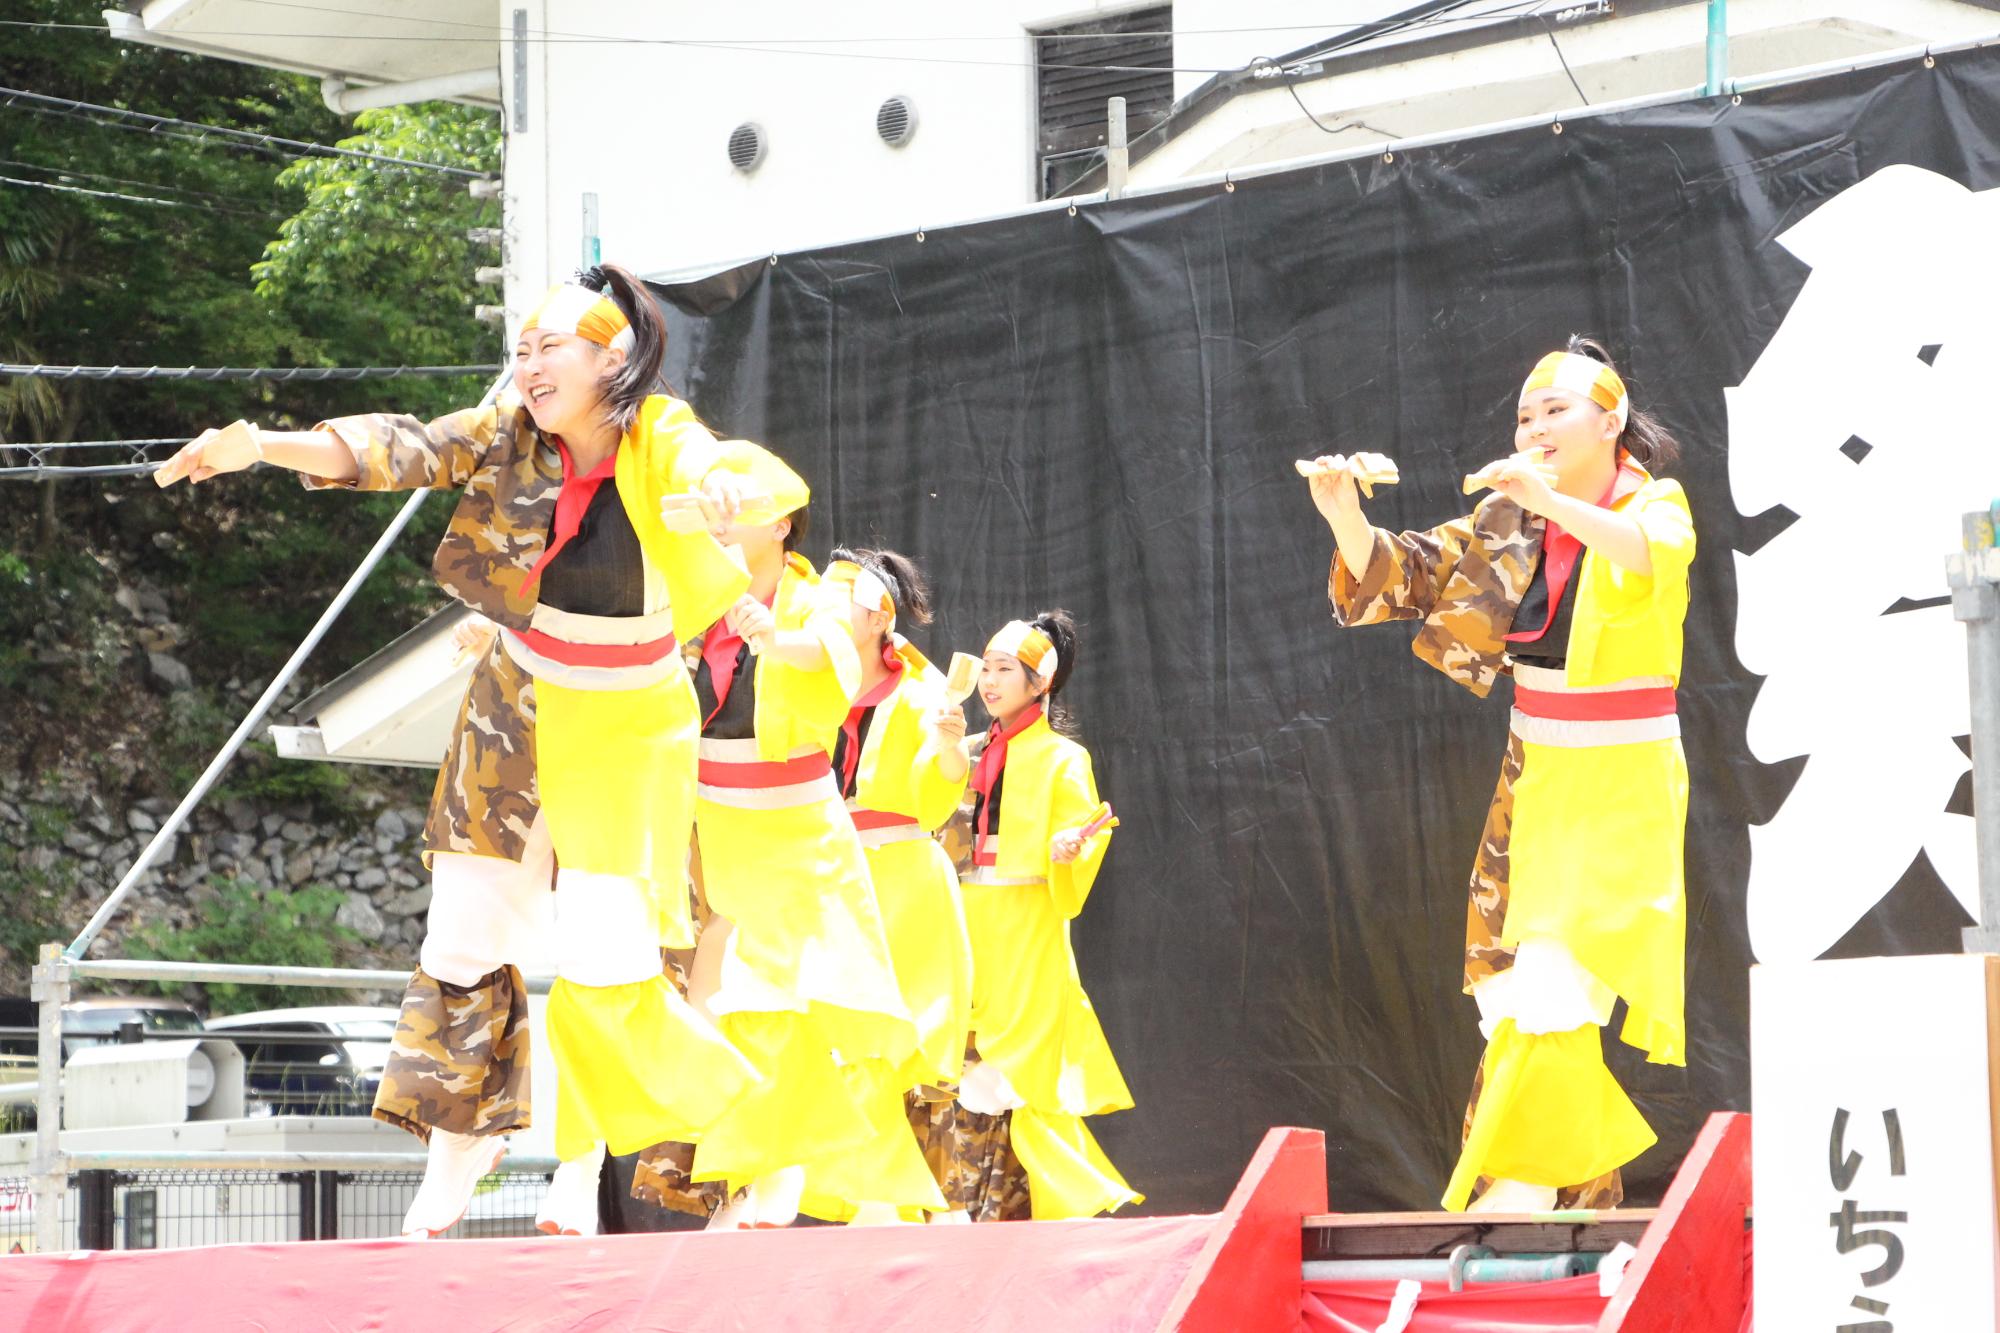 姫路市や宍粟市を拠点に活動するよさこいグループ「いちえもん」がステージでよさこいパフォーマンスを披露している写真